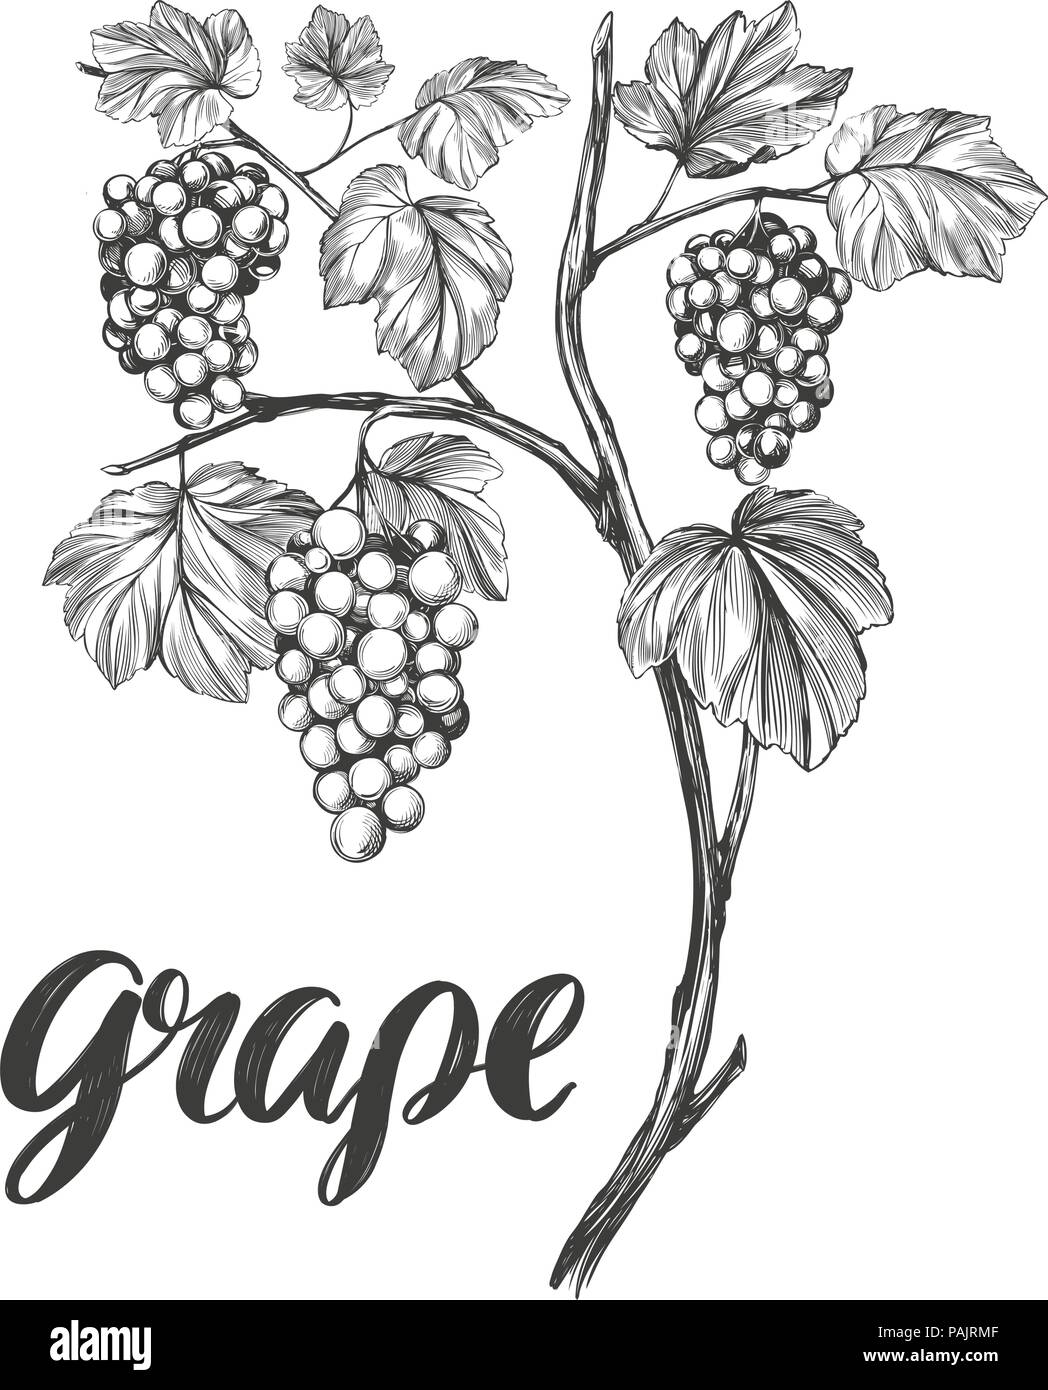 Vigne, raisin, texte calligraphie hand drawn vector illustration croquis réalistes Illustration de Vecteur